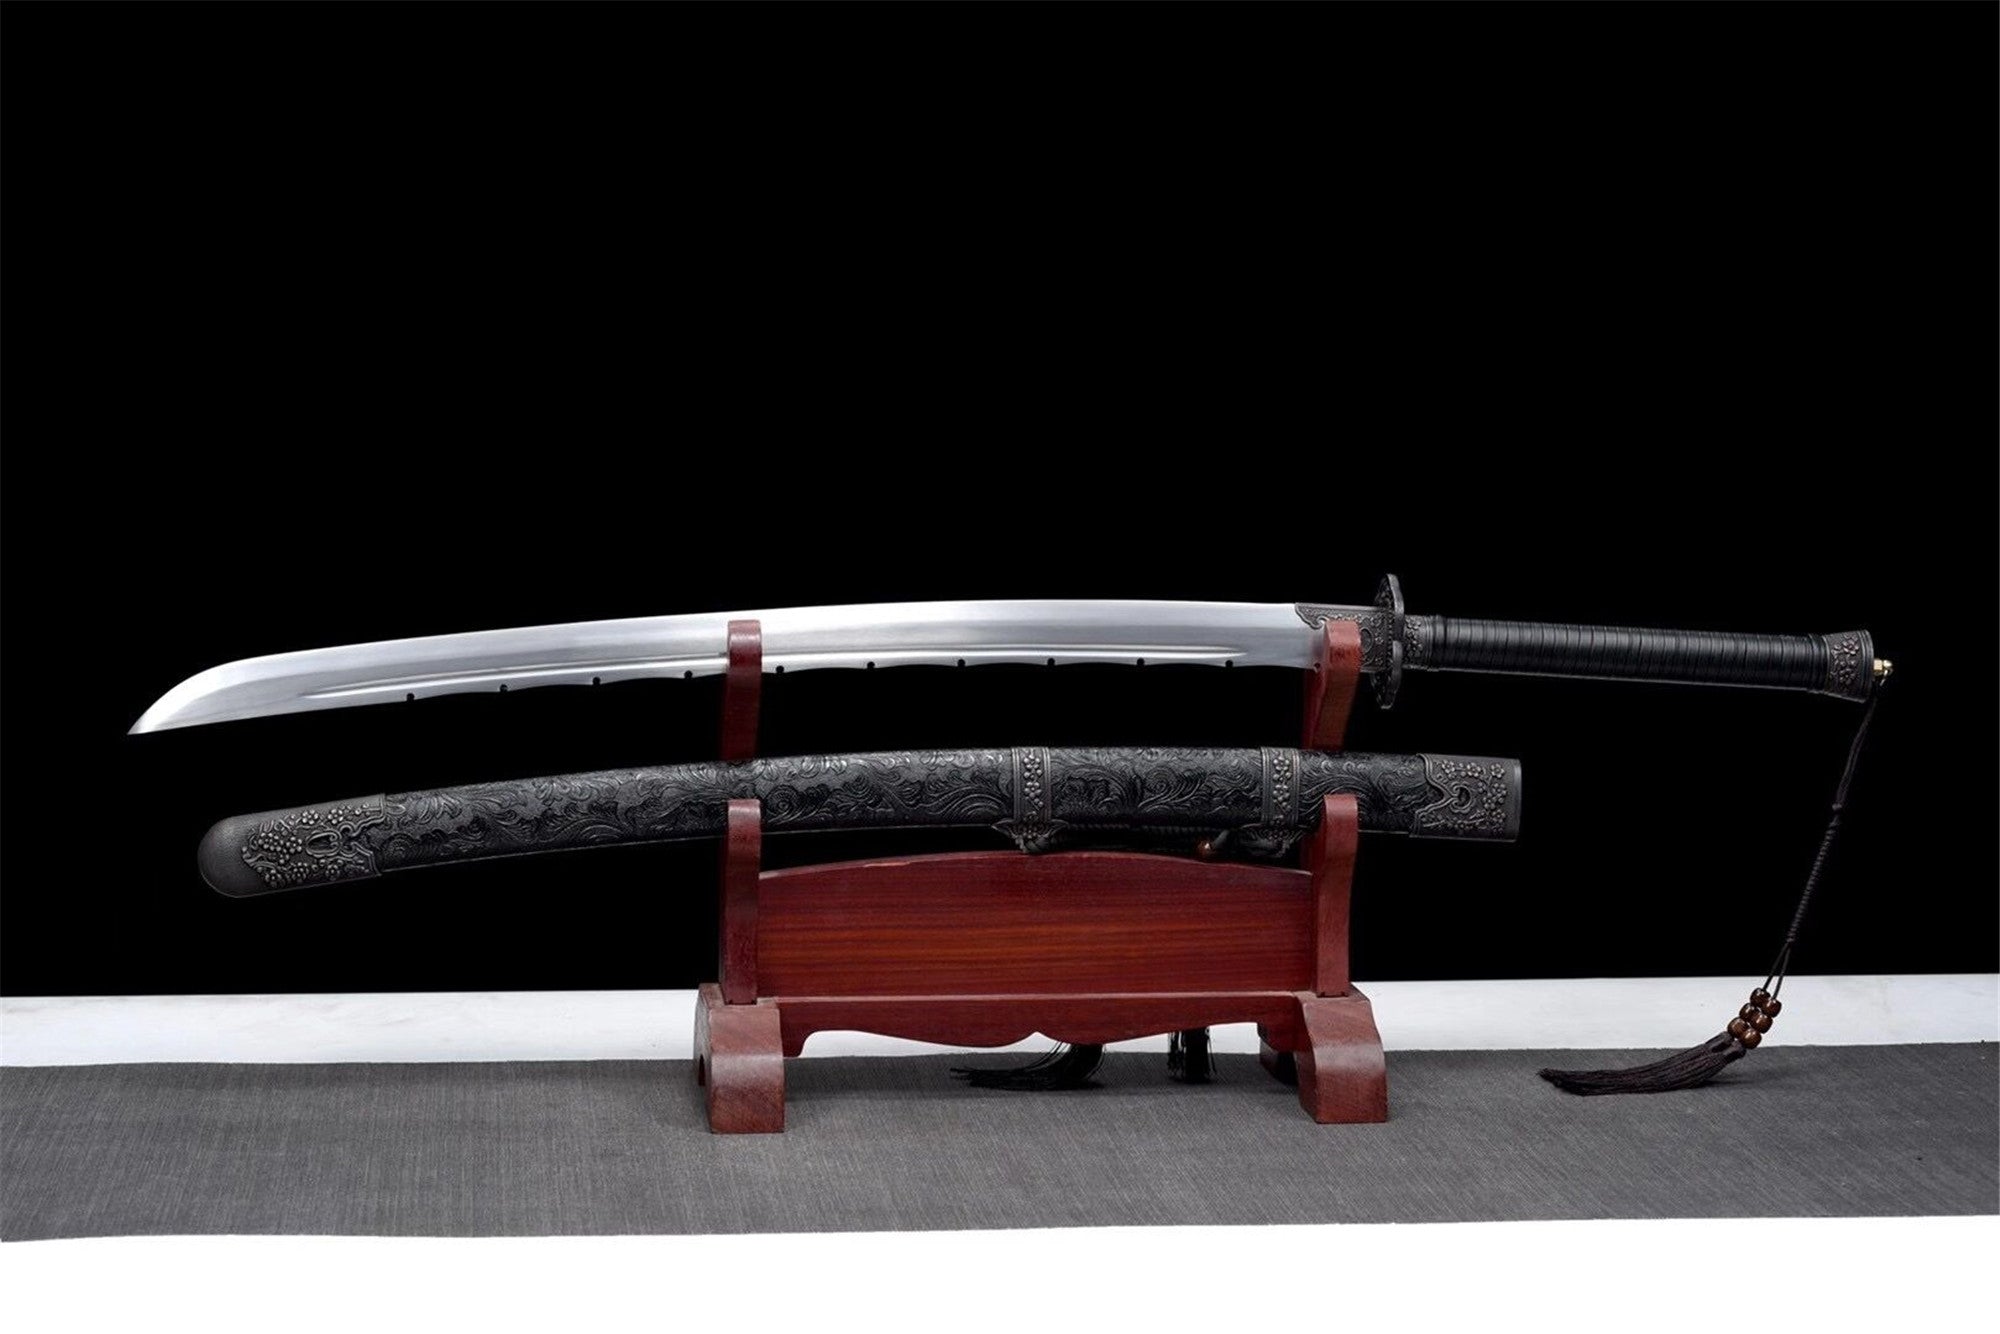 Bruderschaft der Klingen, Handwerk, Fegefeuer, echtes Schwert, handgefertigtes chinesisches Schwert, Hochmanganstahl, Longquan-Schwert